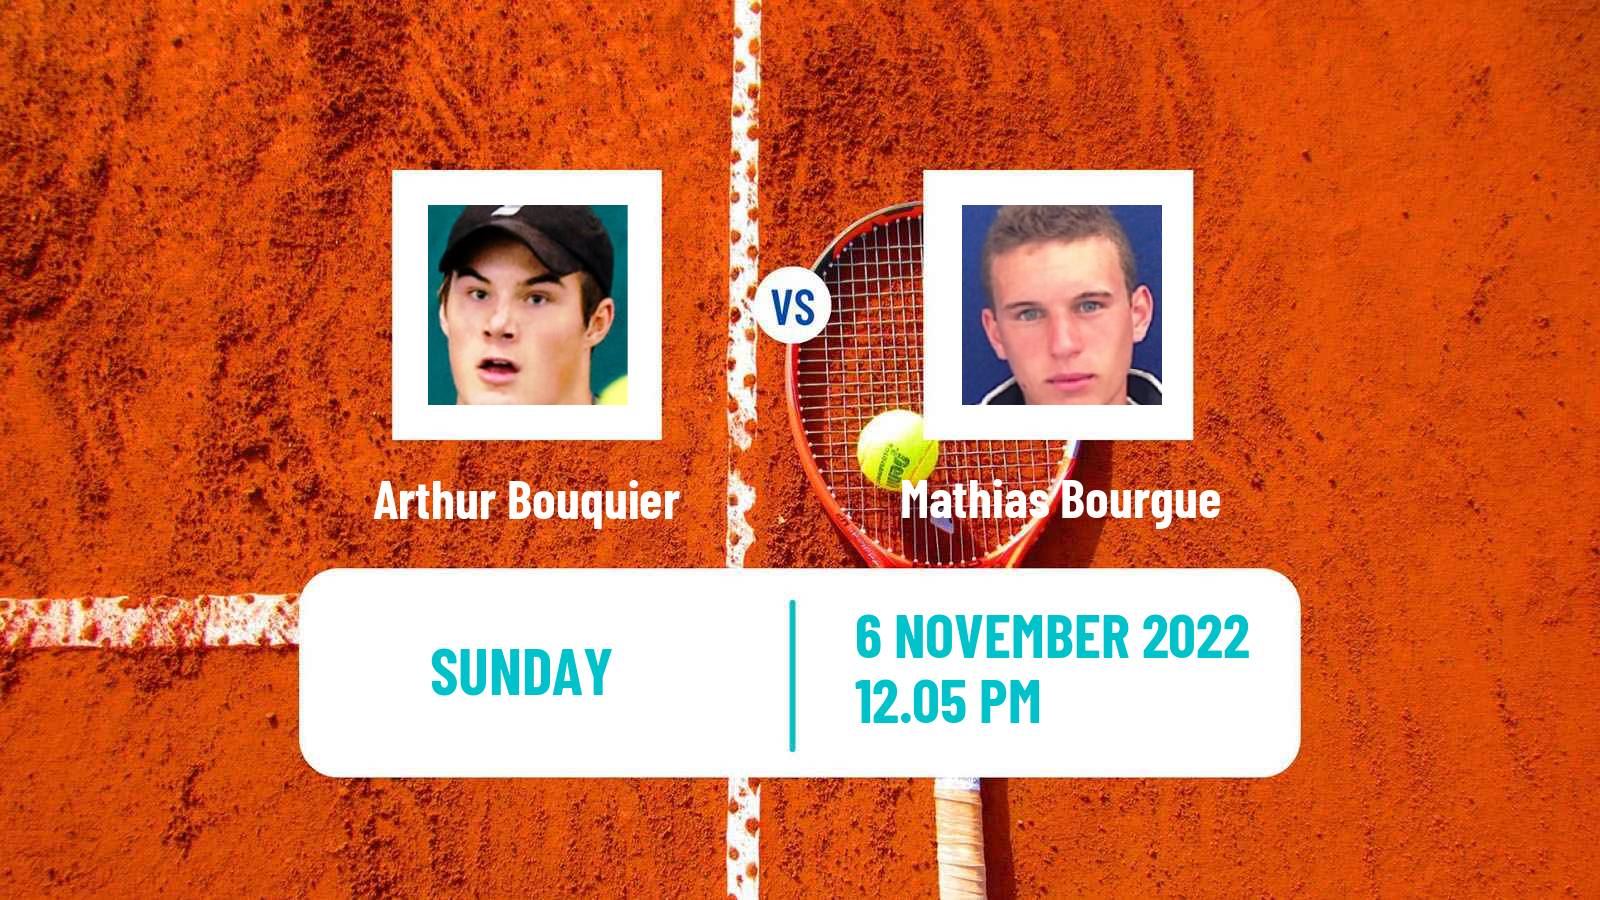 Tennis ATP Challenger Arthur Bouquier - Mathias Bourgue